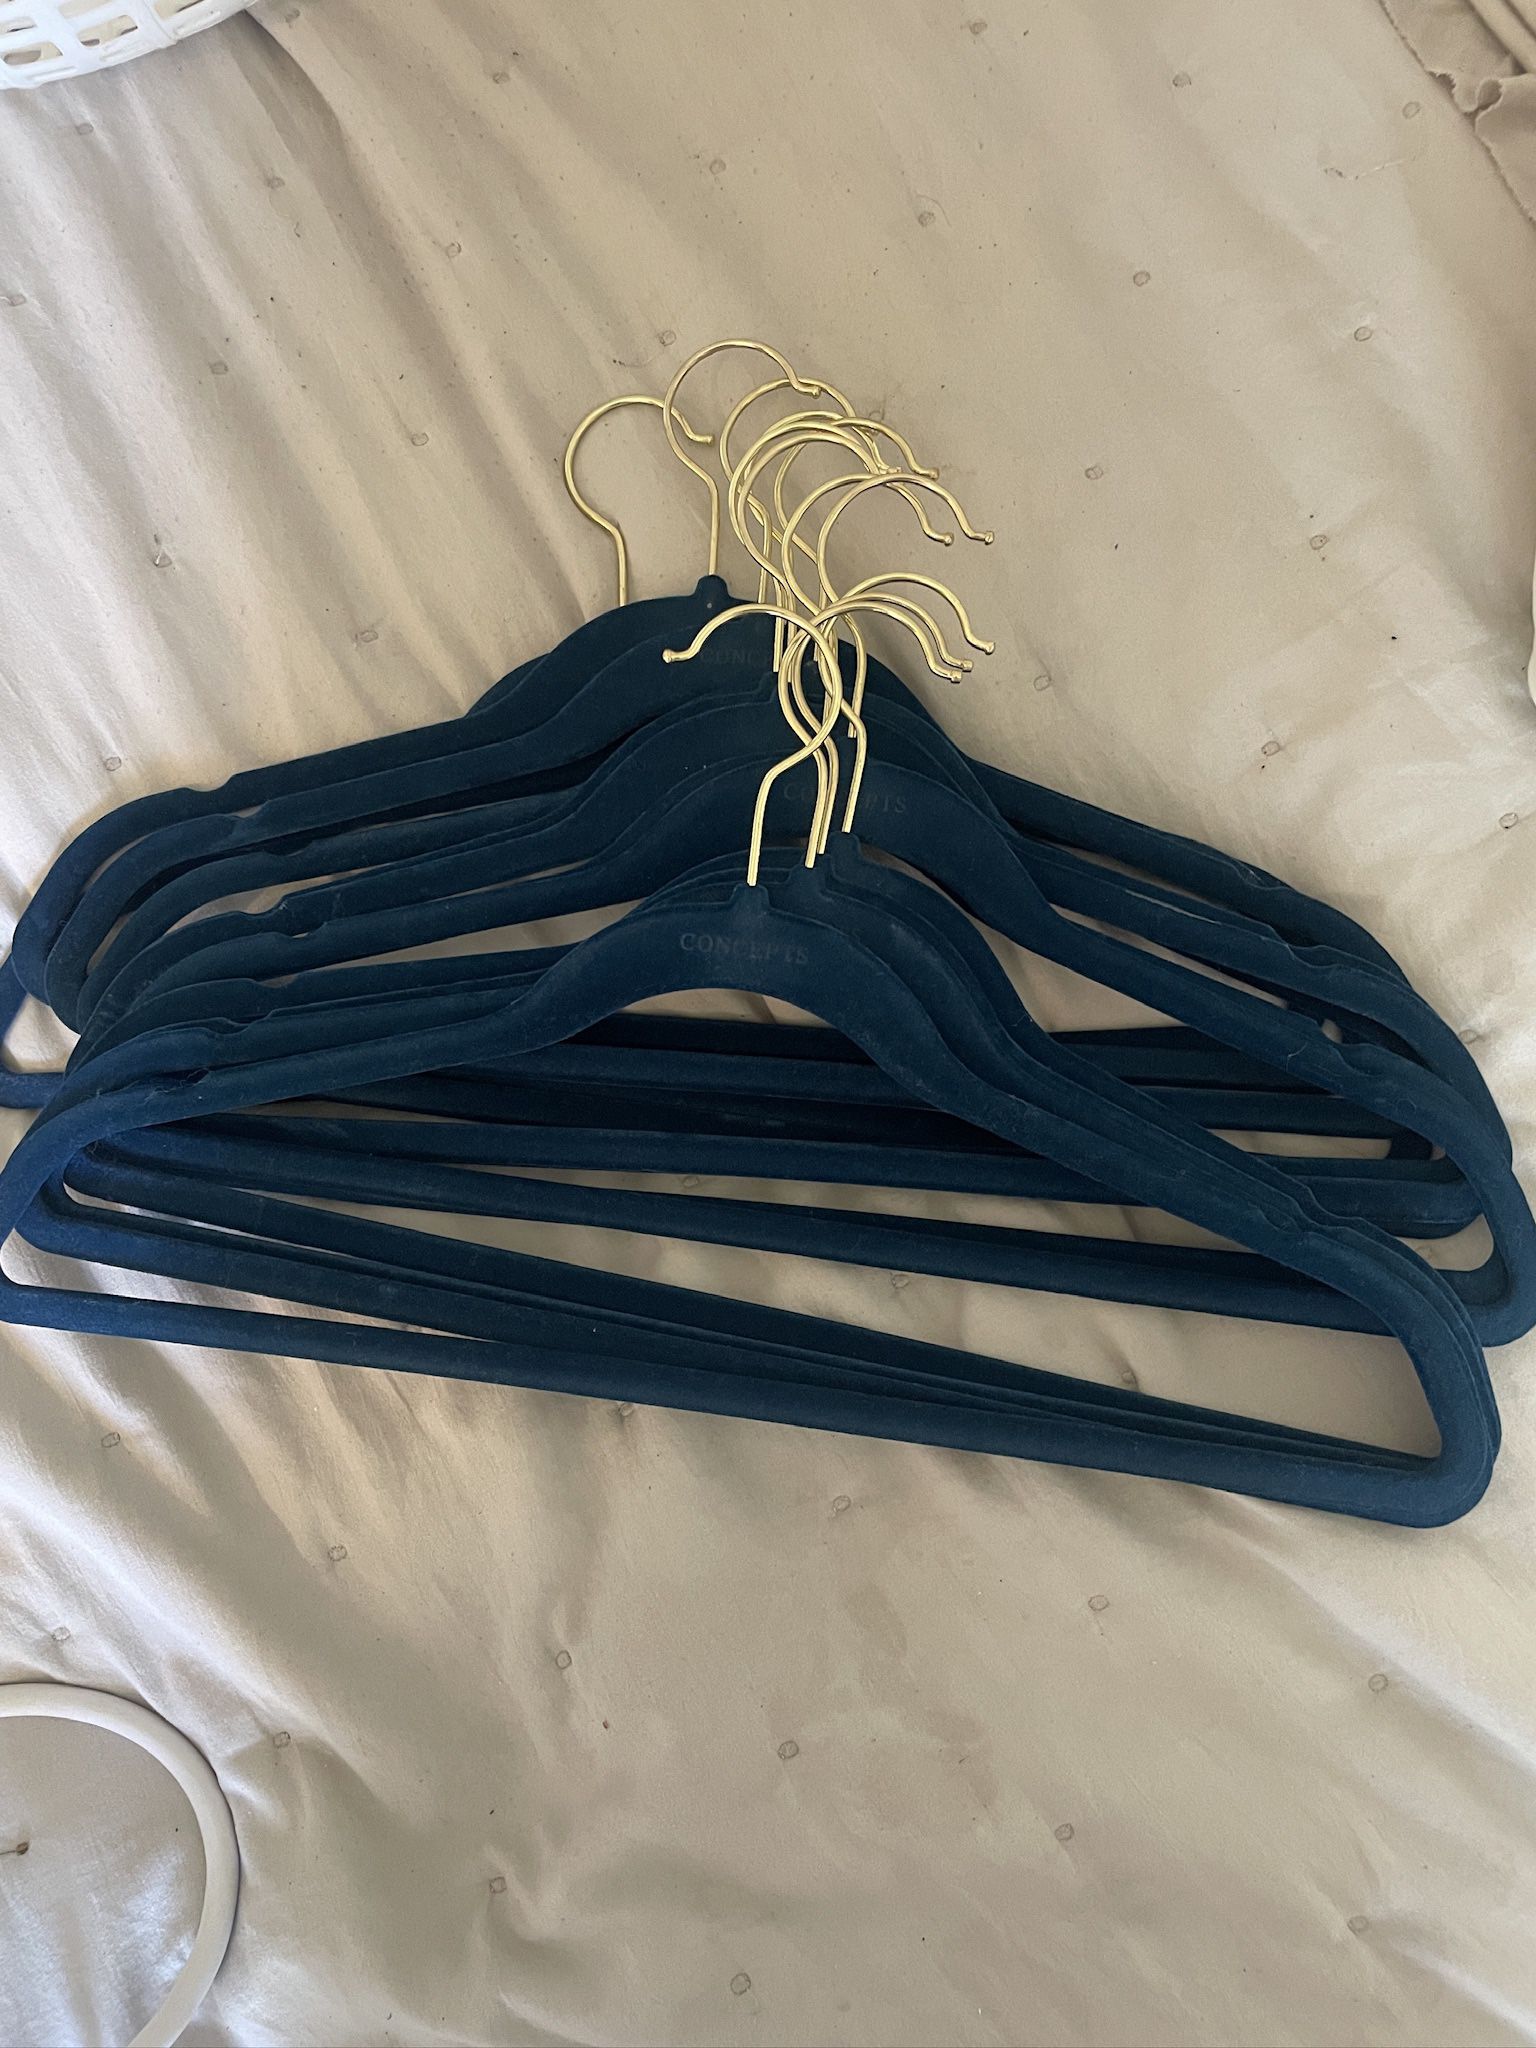 velvet clothing hangers 